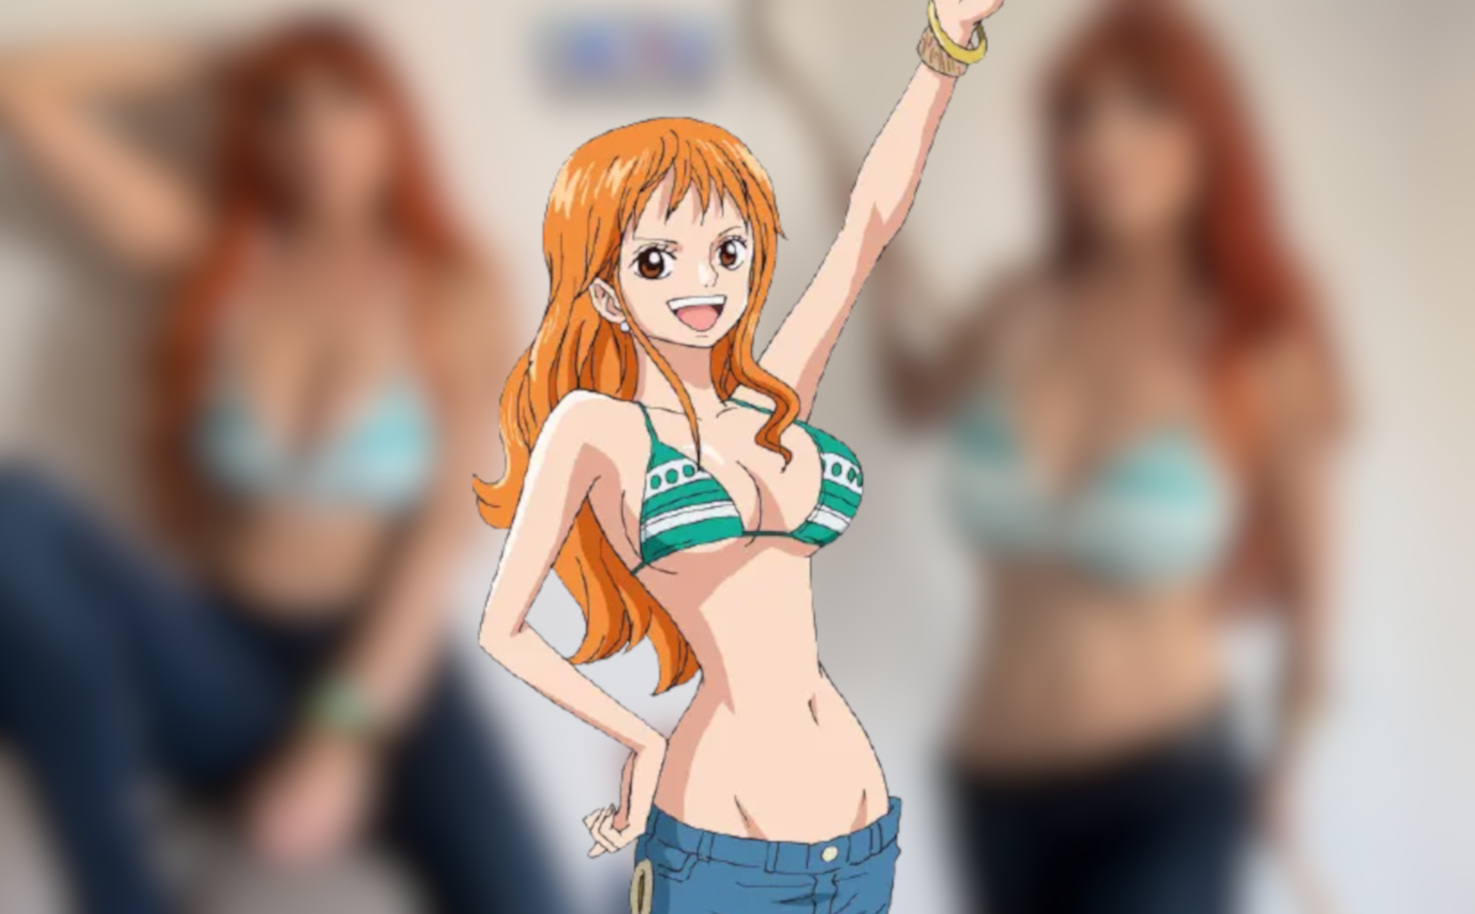 Cosplayer pamdroid18 recriou de forma impecável o visual de Nami de One Piece